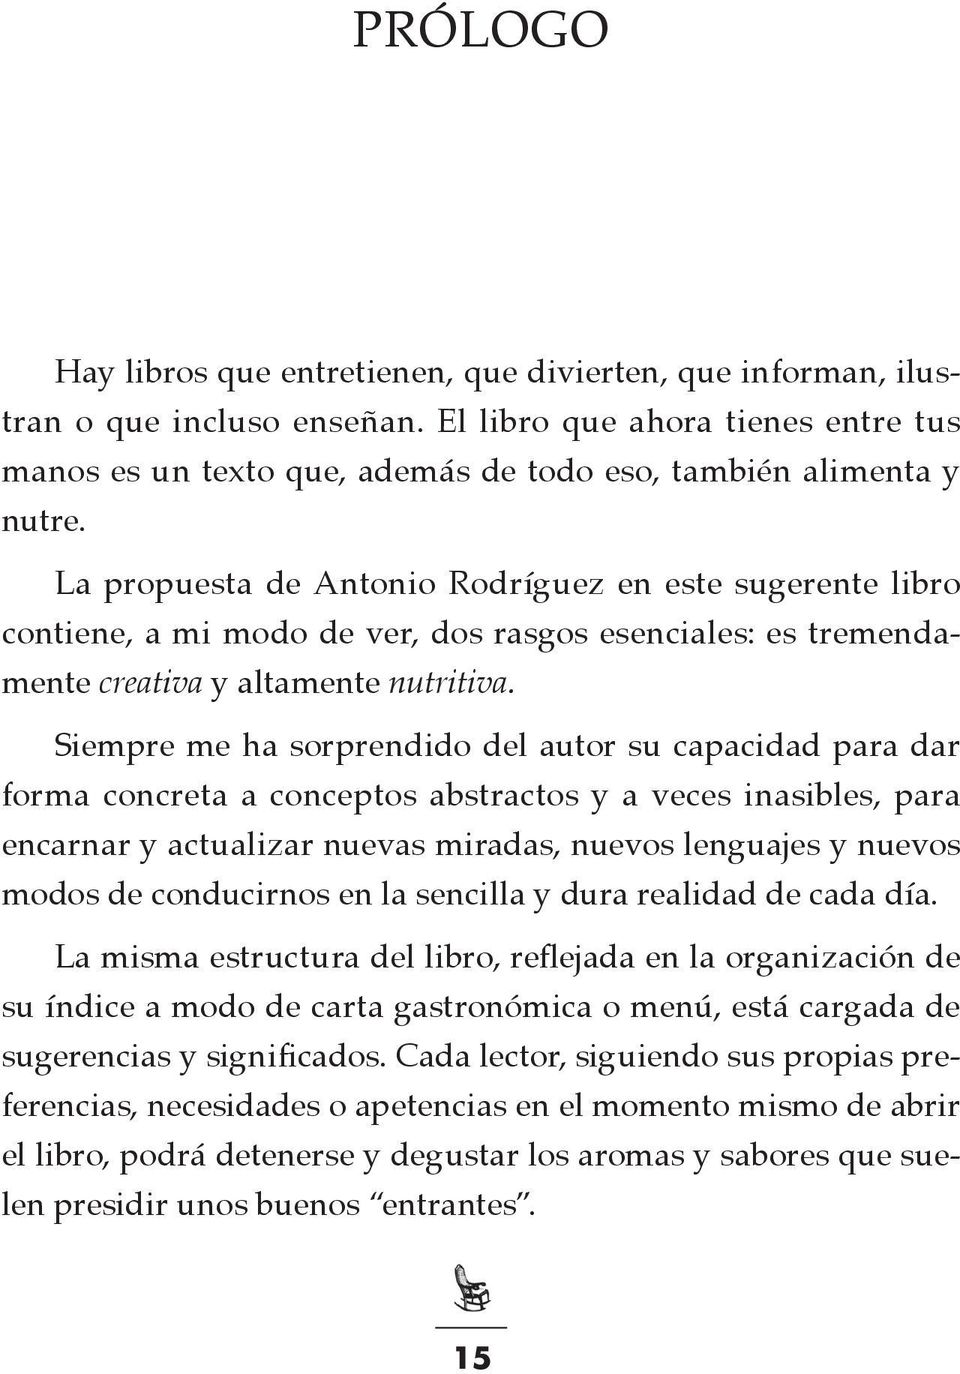 La propuesta de Antonio Rodríguez en este sugerente libro contiene, a mi modo de ver, dos rasgos esenciales: es tremendamente creativa y altamente nutritiva.